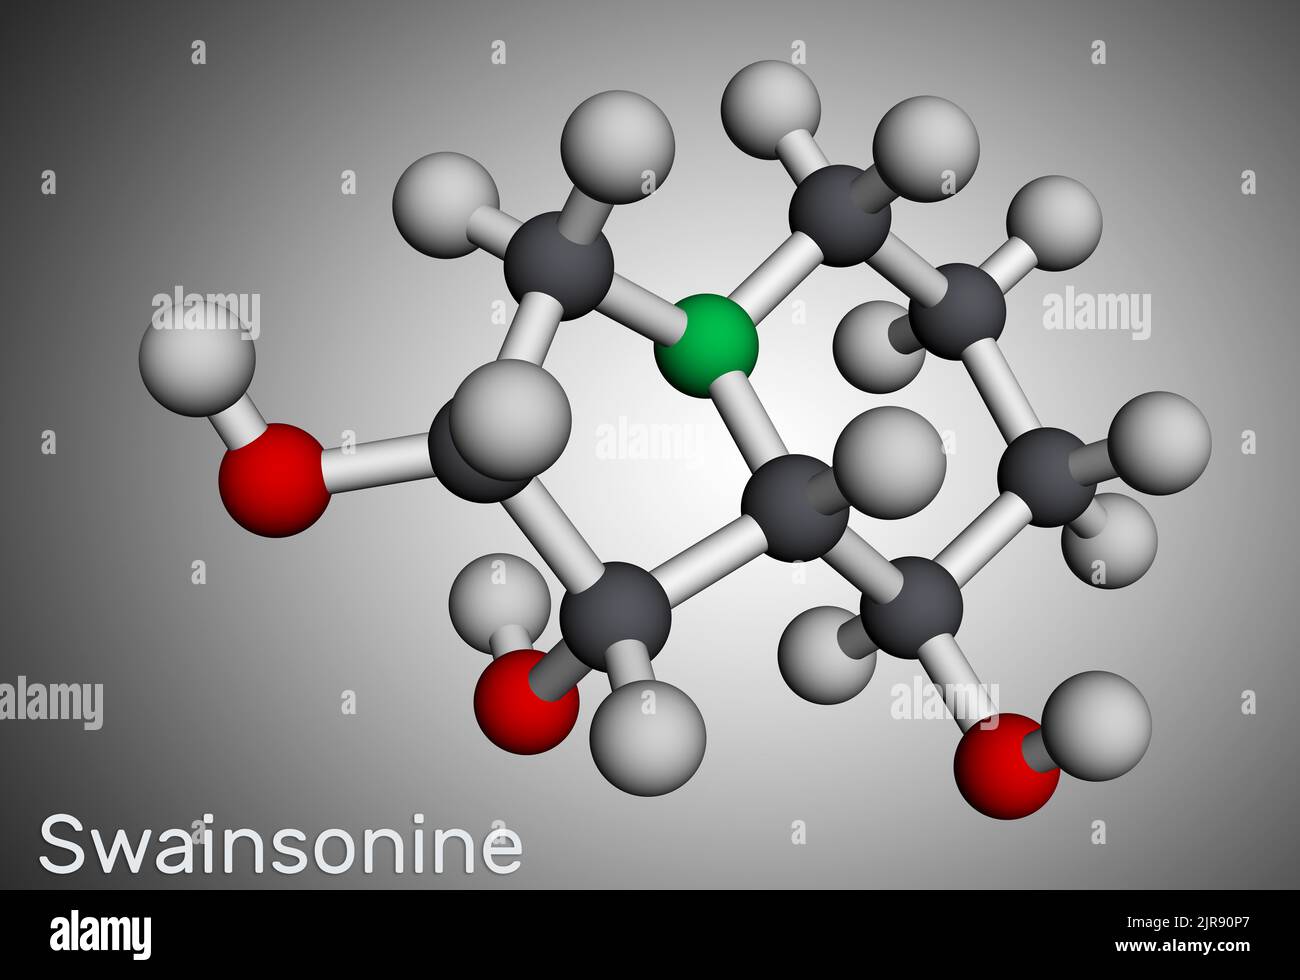 Swainsonin, Tridolgosir-Molekül. Es ist Indolizidin-Alkaloid aus der Pflanze Swainsona, mit immunmodulatorischen Aktivität. Molekularmodell. 3D Rendern Stockfoto